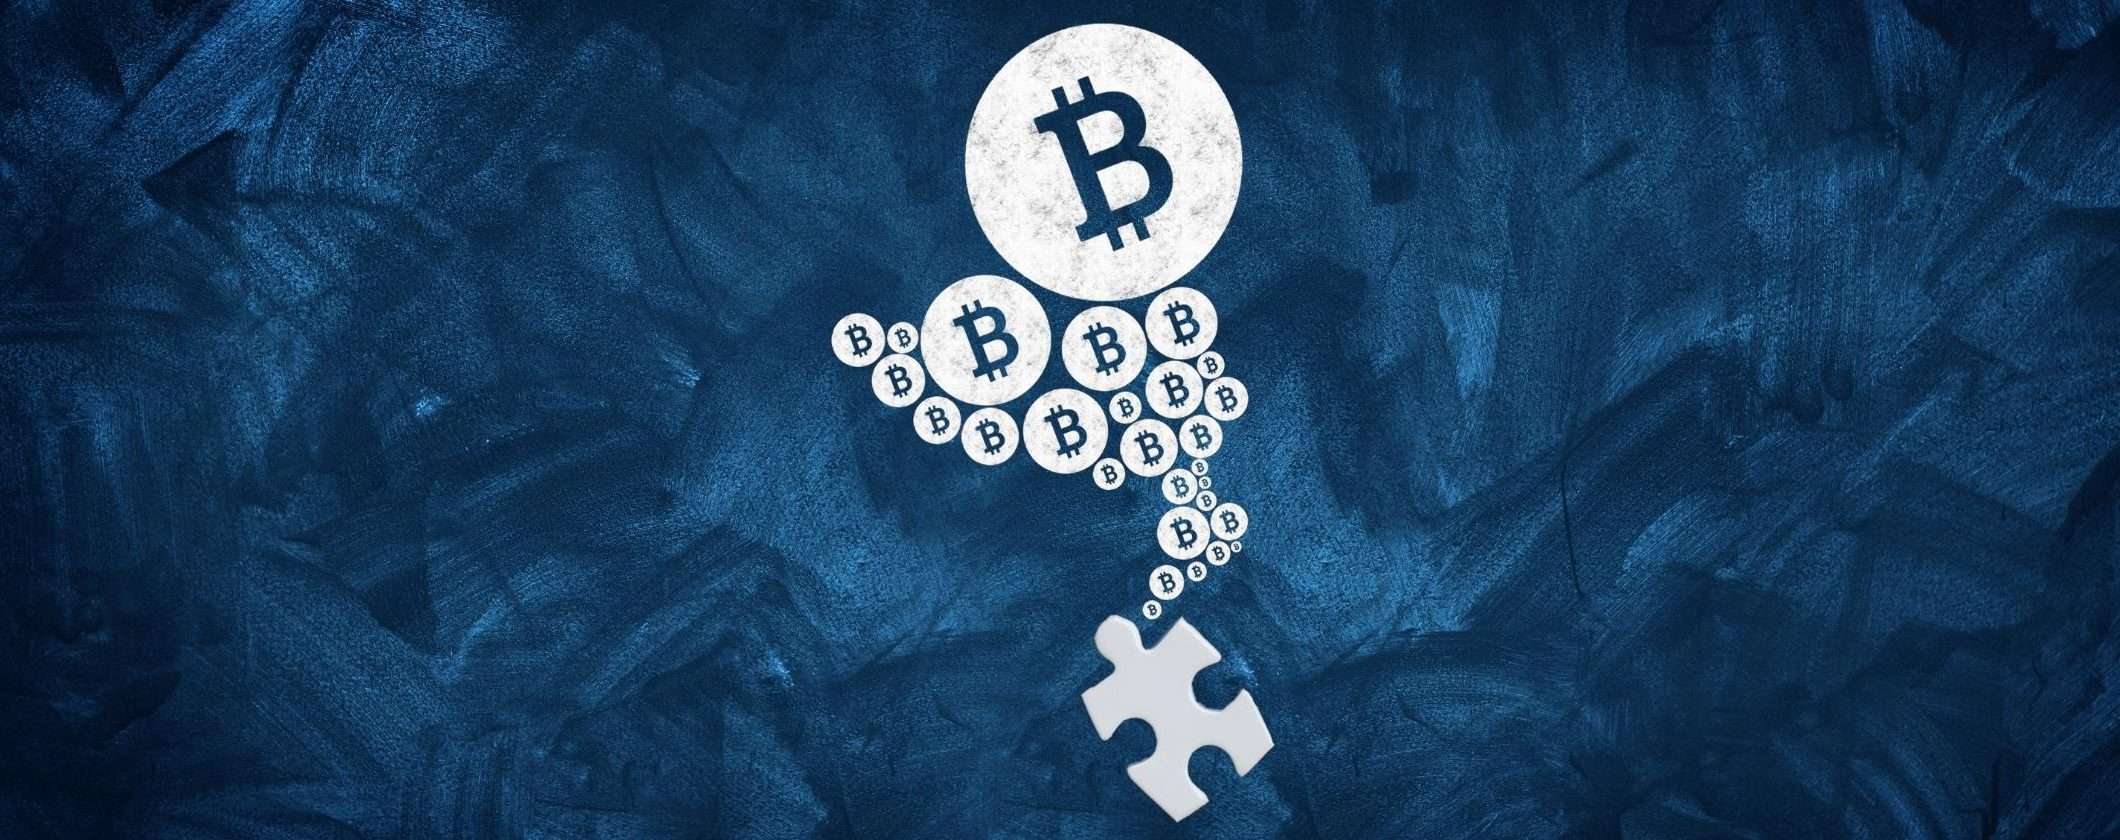 Bitcoin: cosa dobbiamo aspettarci nei prossimi giorni